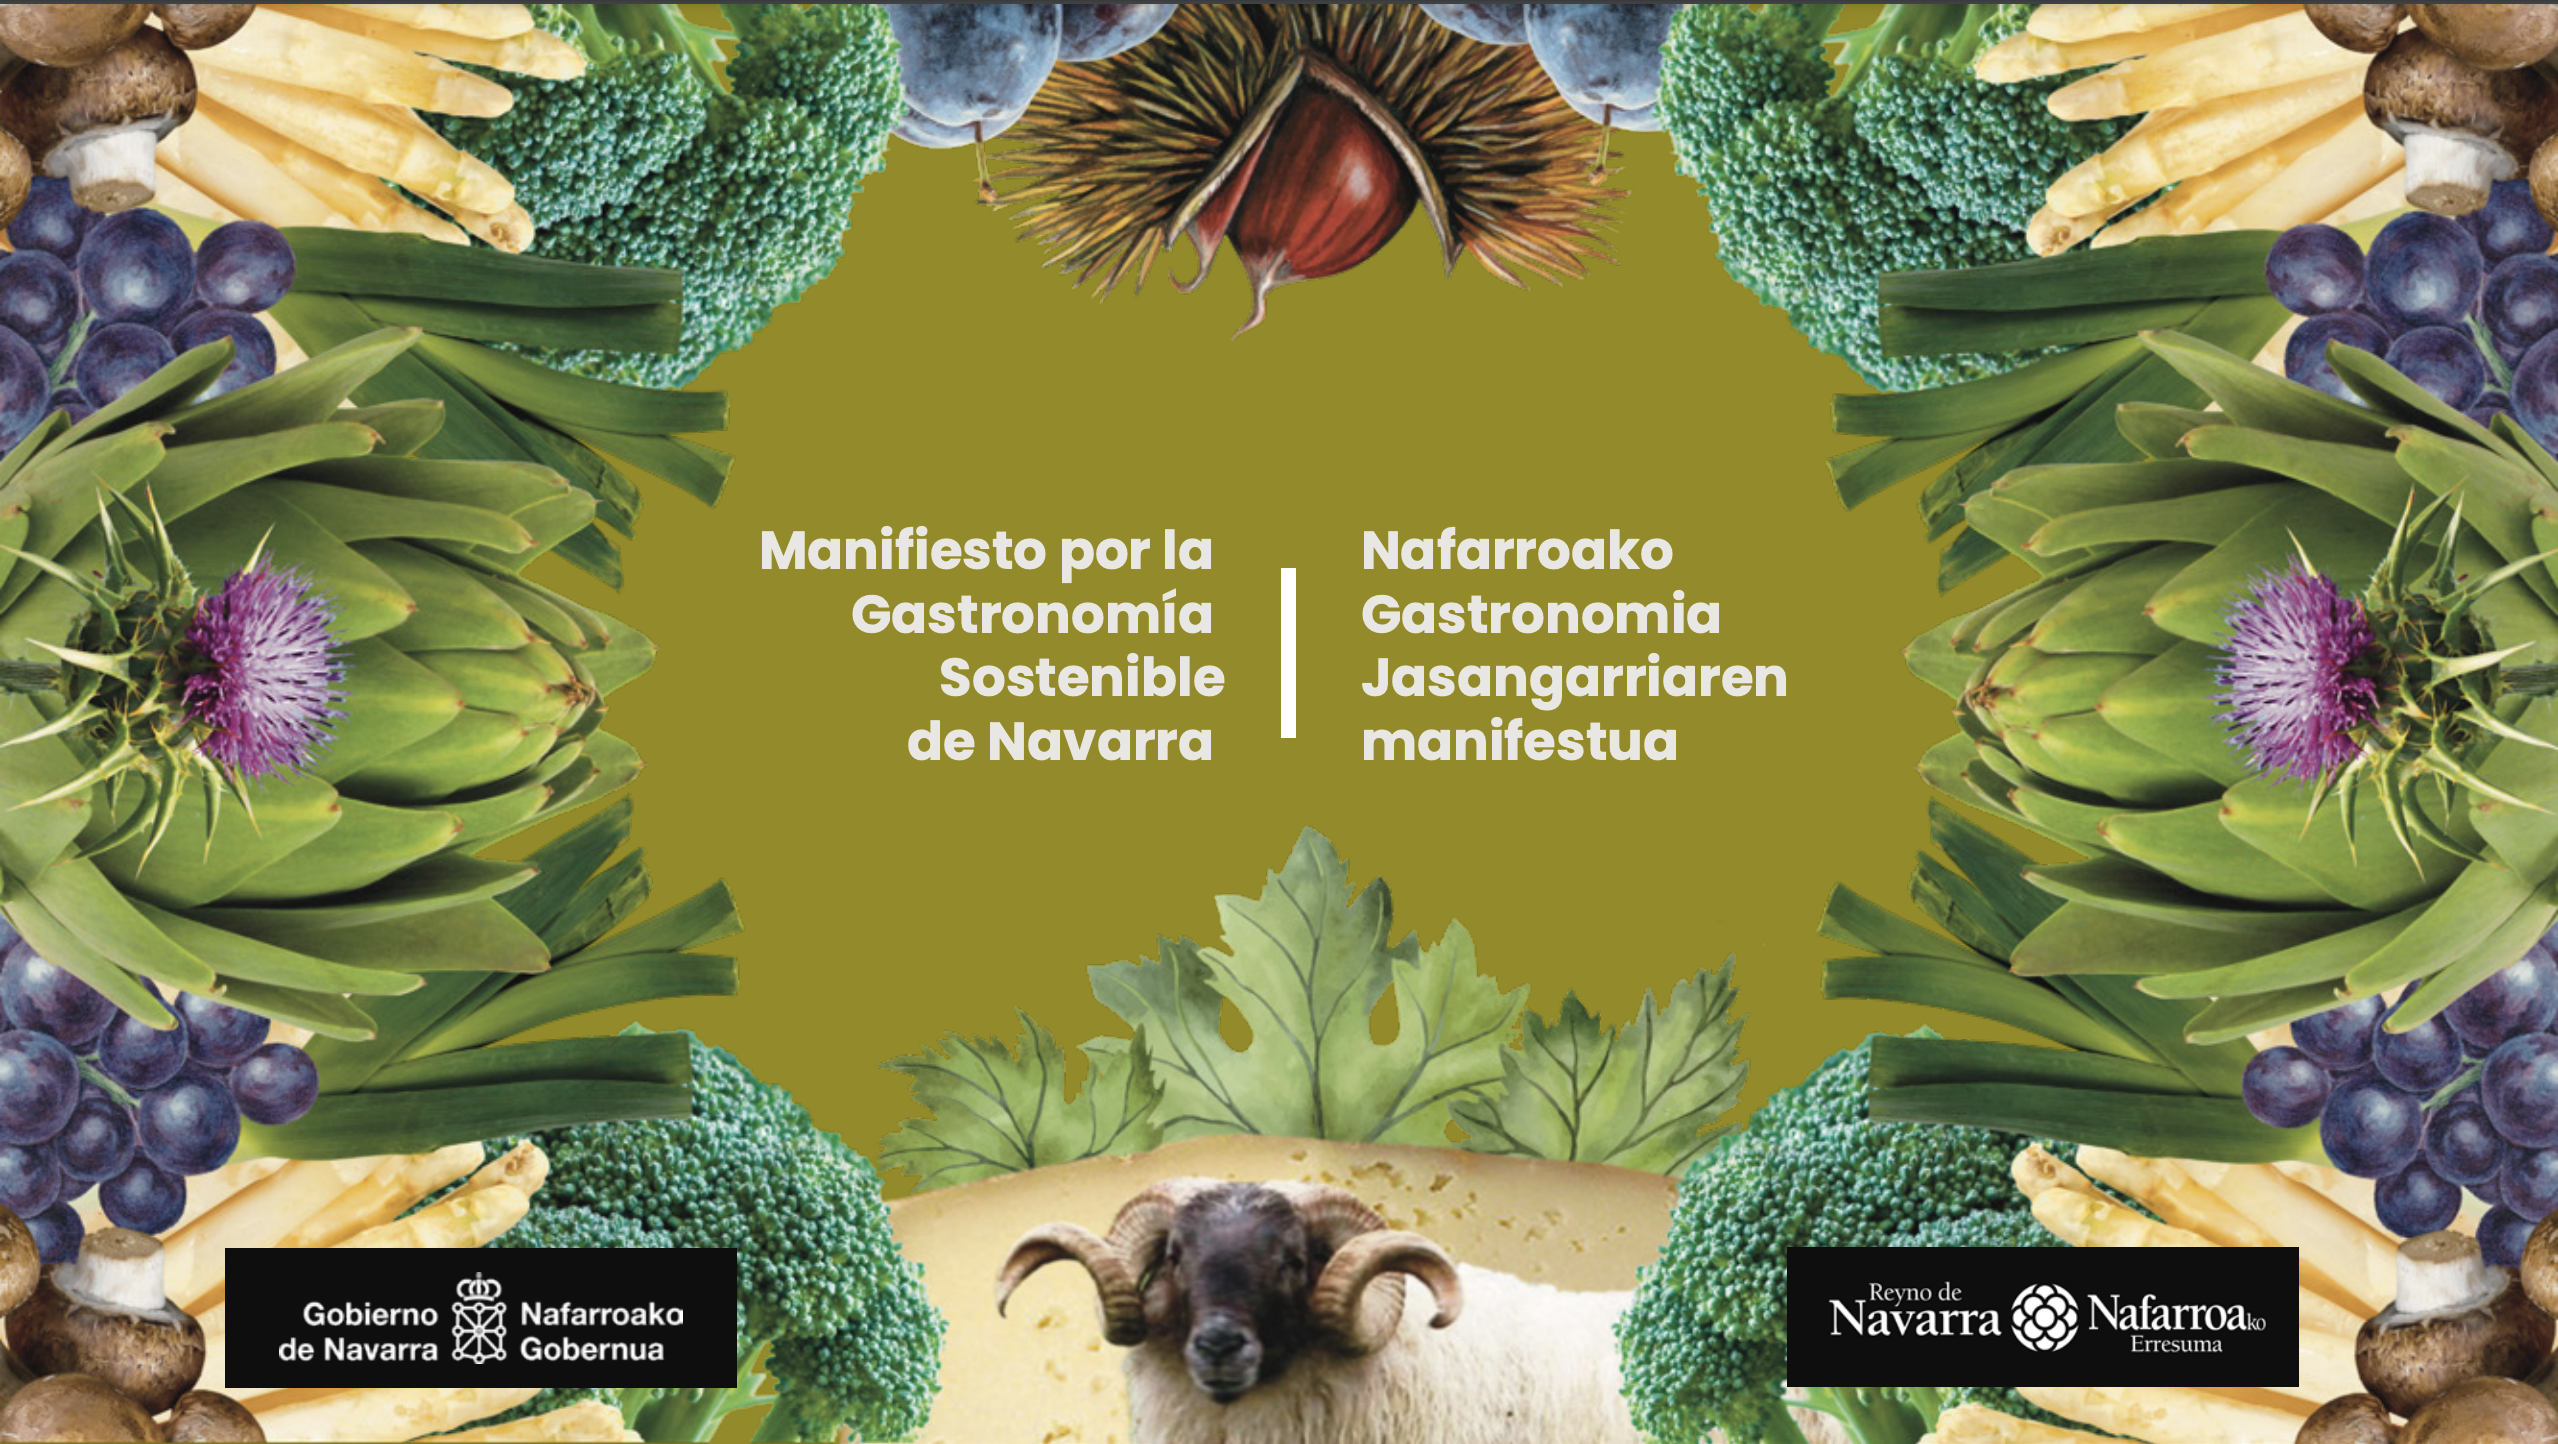 Presentado en FITUR el Manifiesto por la Gastronomía Sostenible de Navarra